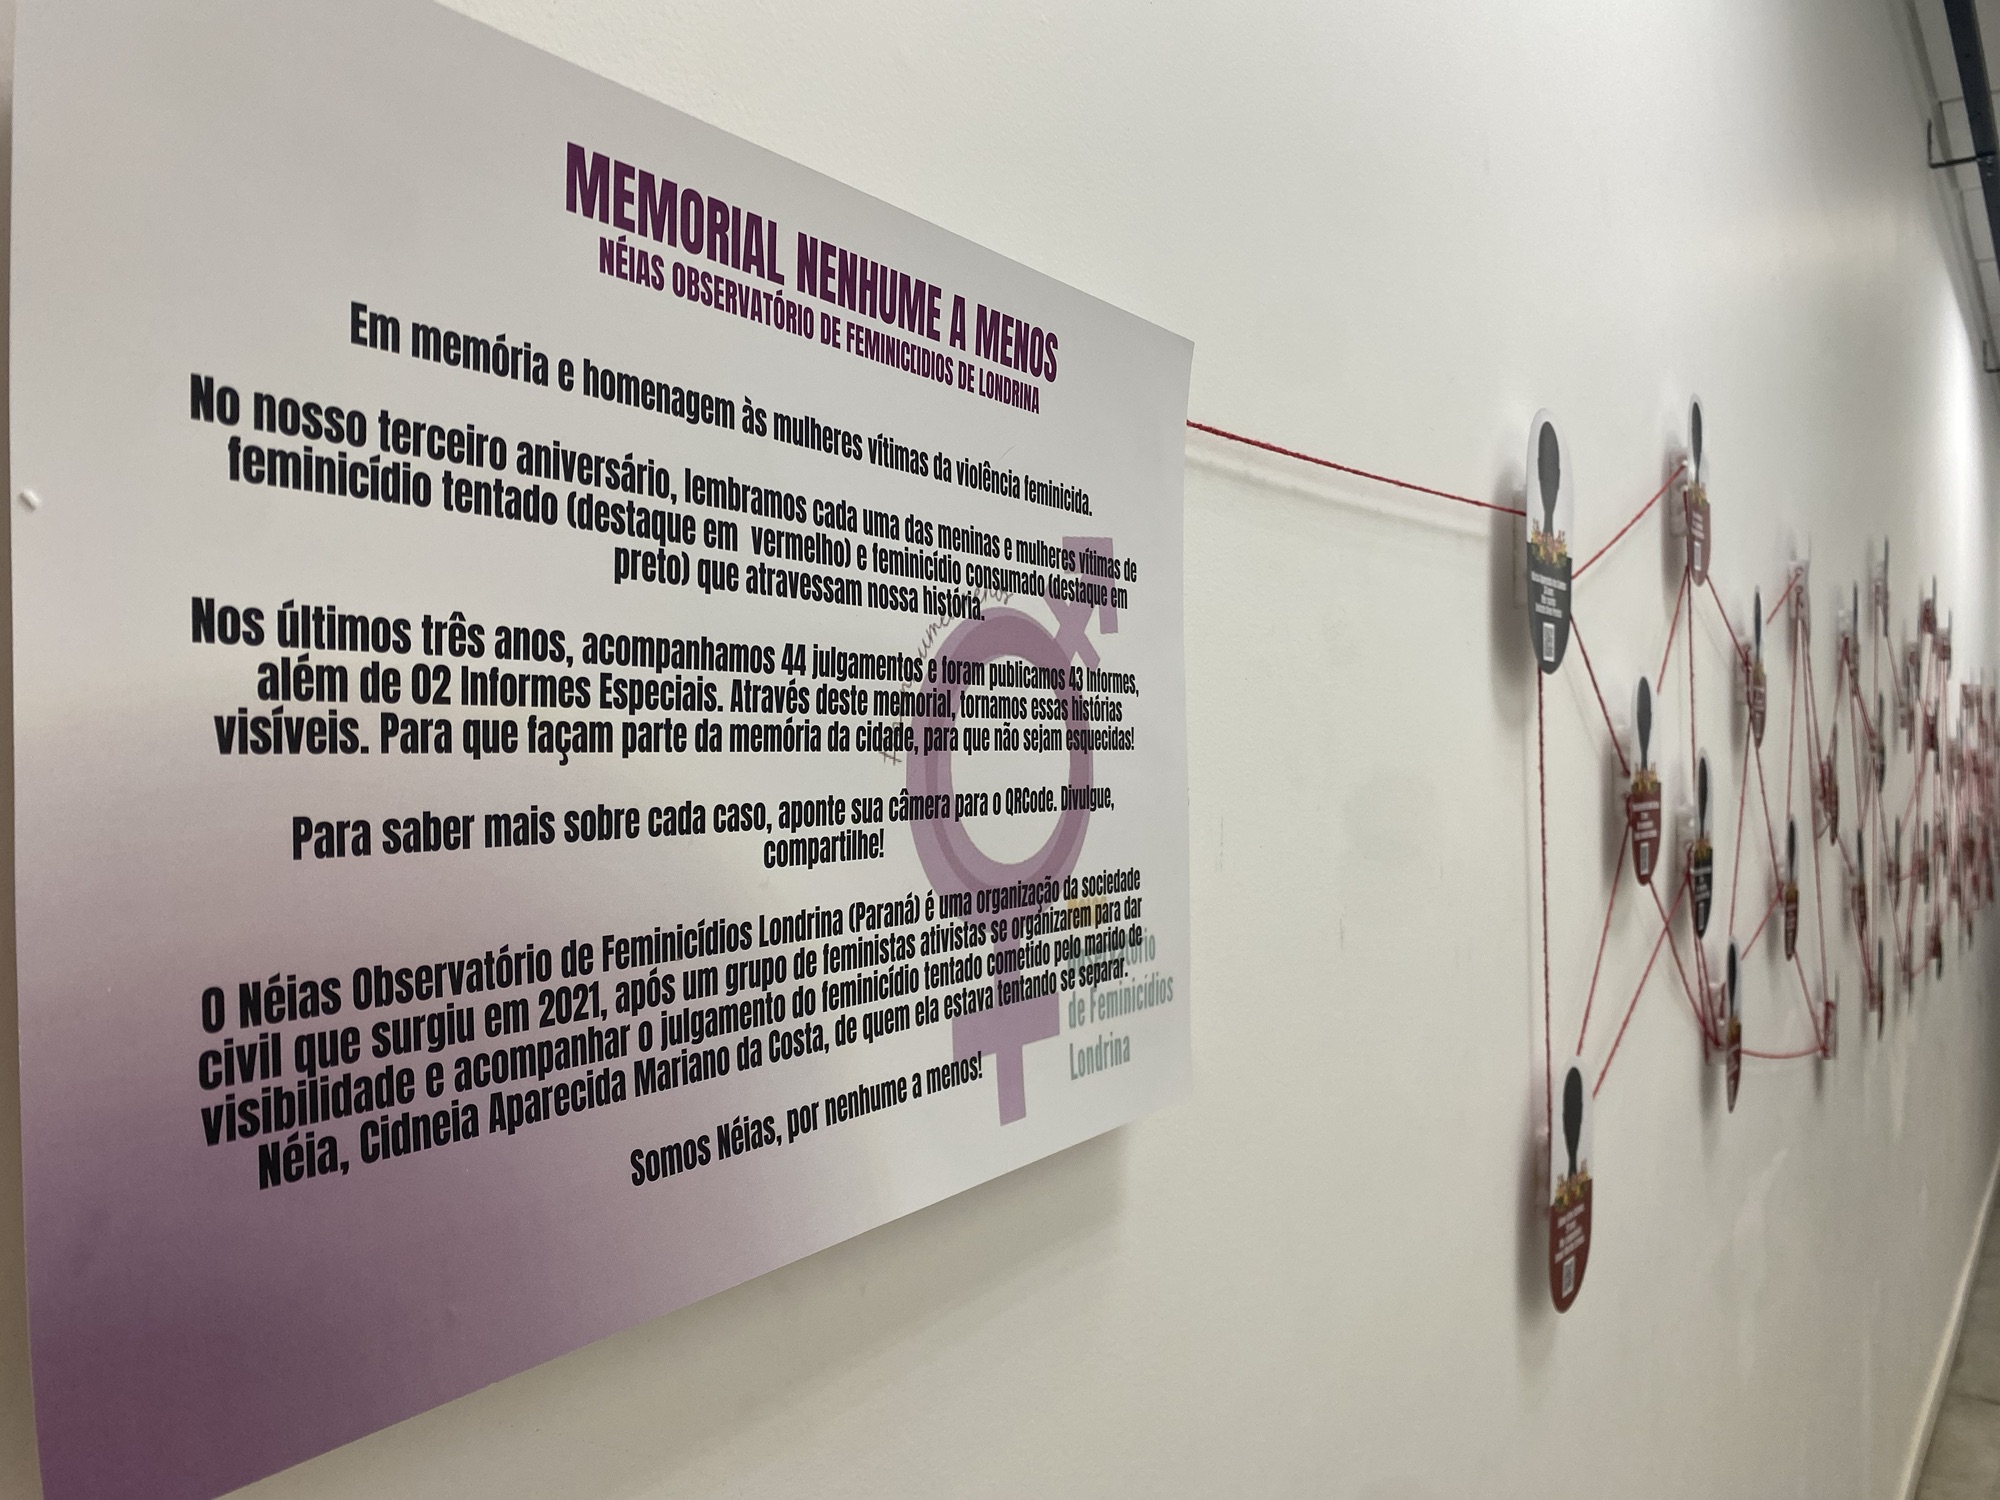 Néias instala memorial às vítimas de feminicídio em Londrina